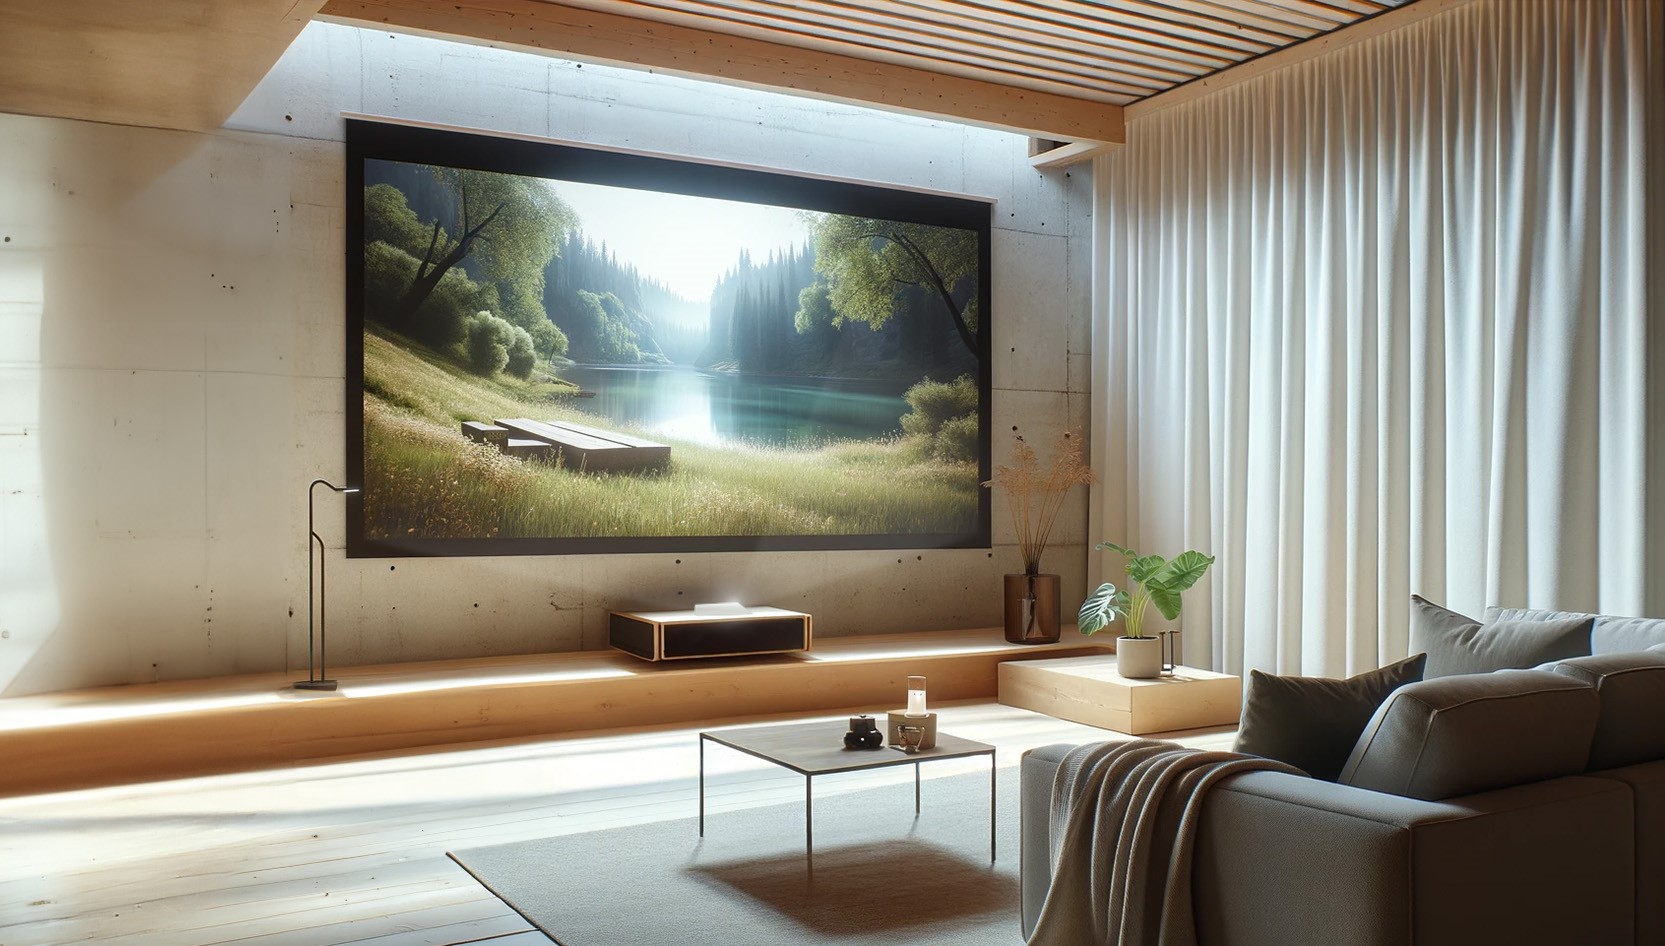 Ein helles, gemütliches Wohnzimmer mit großem Fernseher an der Wand, der eine ruhige Naturszene zeigt, flankiert von einer Holzverkleidung und weichen Möbeln, durchzogen von indirektem Beleuchtungsdesign.